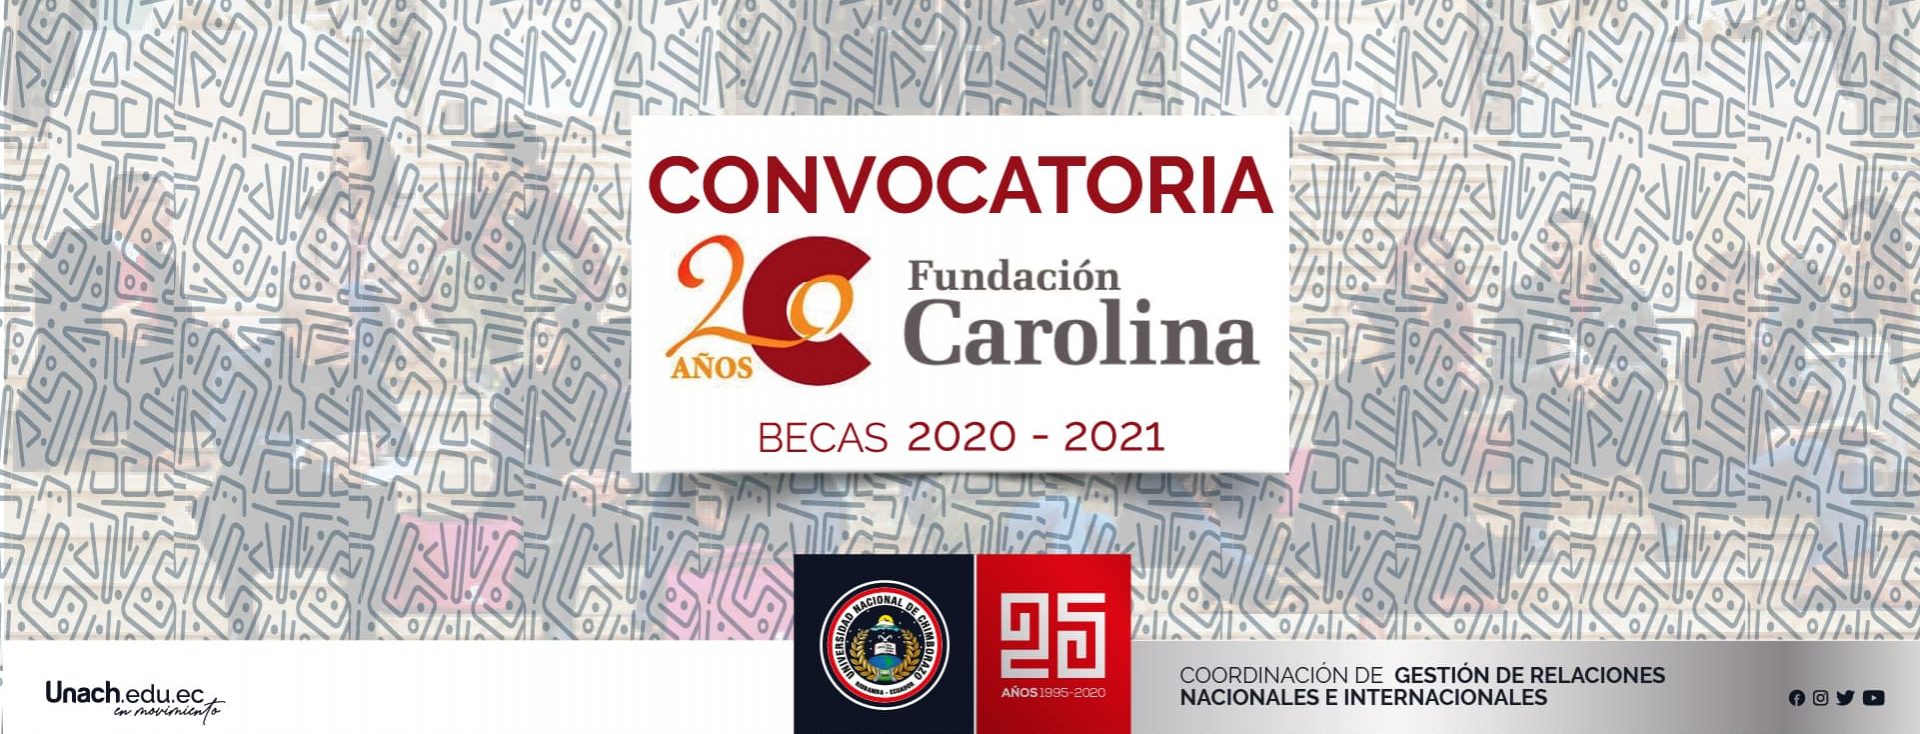 CONVOCATORIAS DE BECAS 2020-21 DE LA FUNDACIÓN CAROLINA